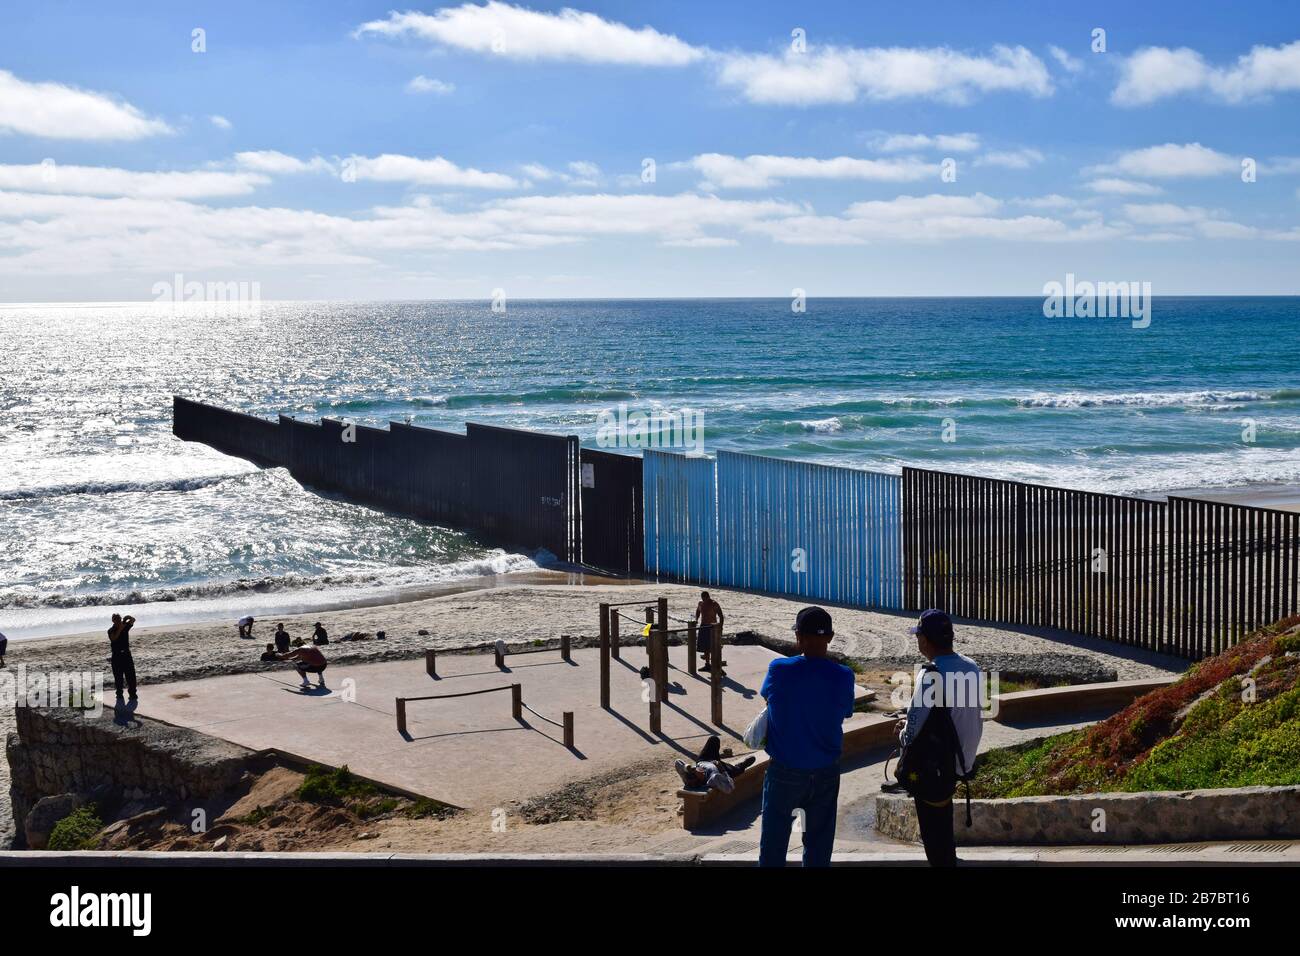 US-Mexico border in Tijuana, Mexico Stock Photo